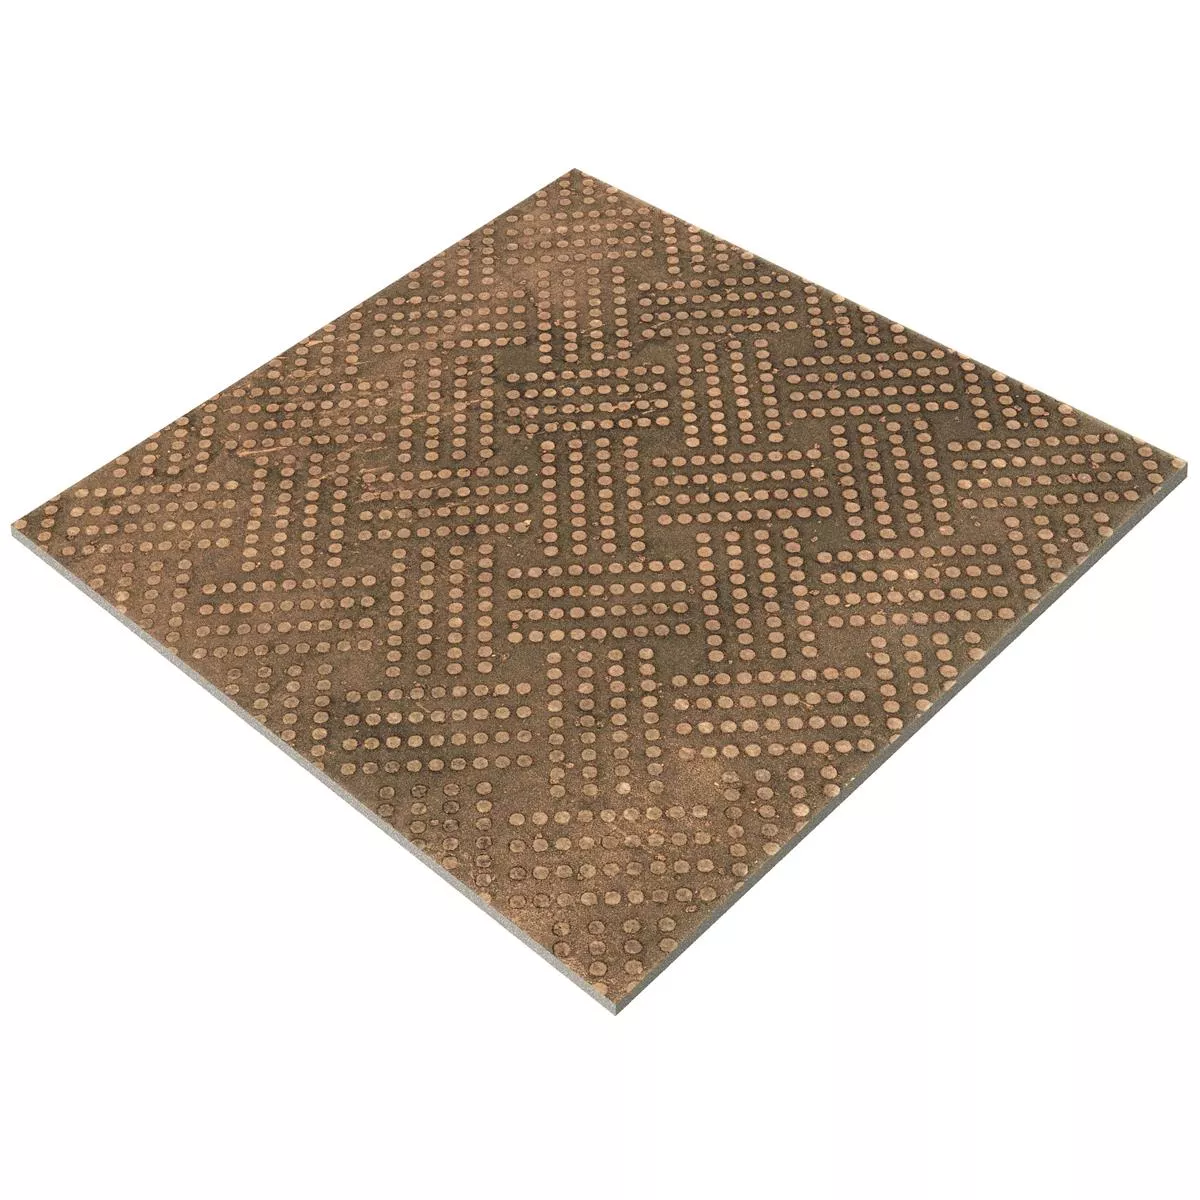 Bodenfliesen Chicago Metalloptik Bronze R9 - 18,5x18,5cm - 1